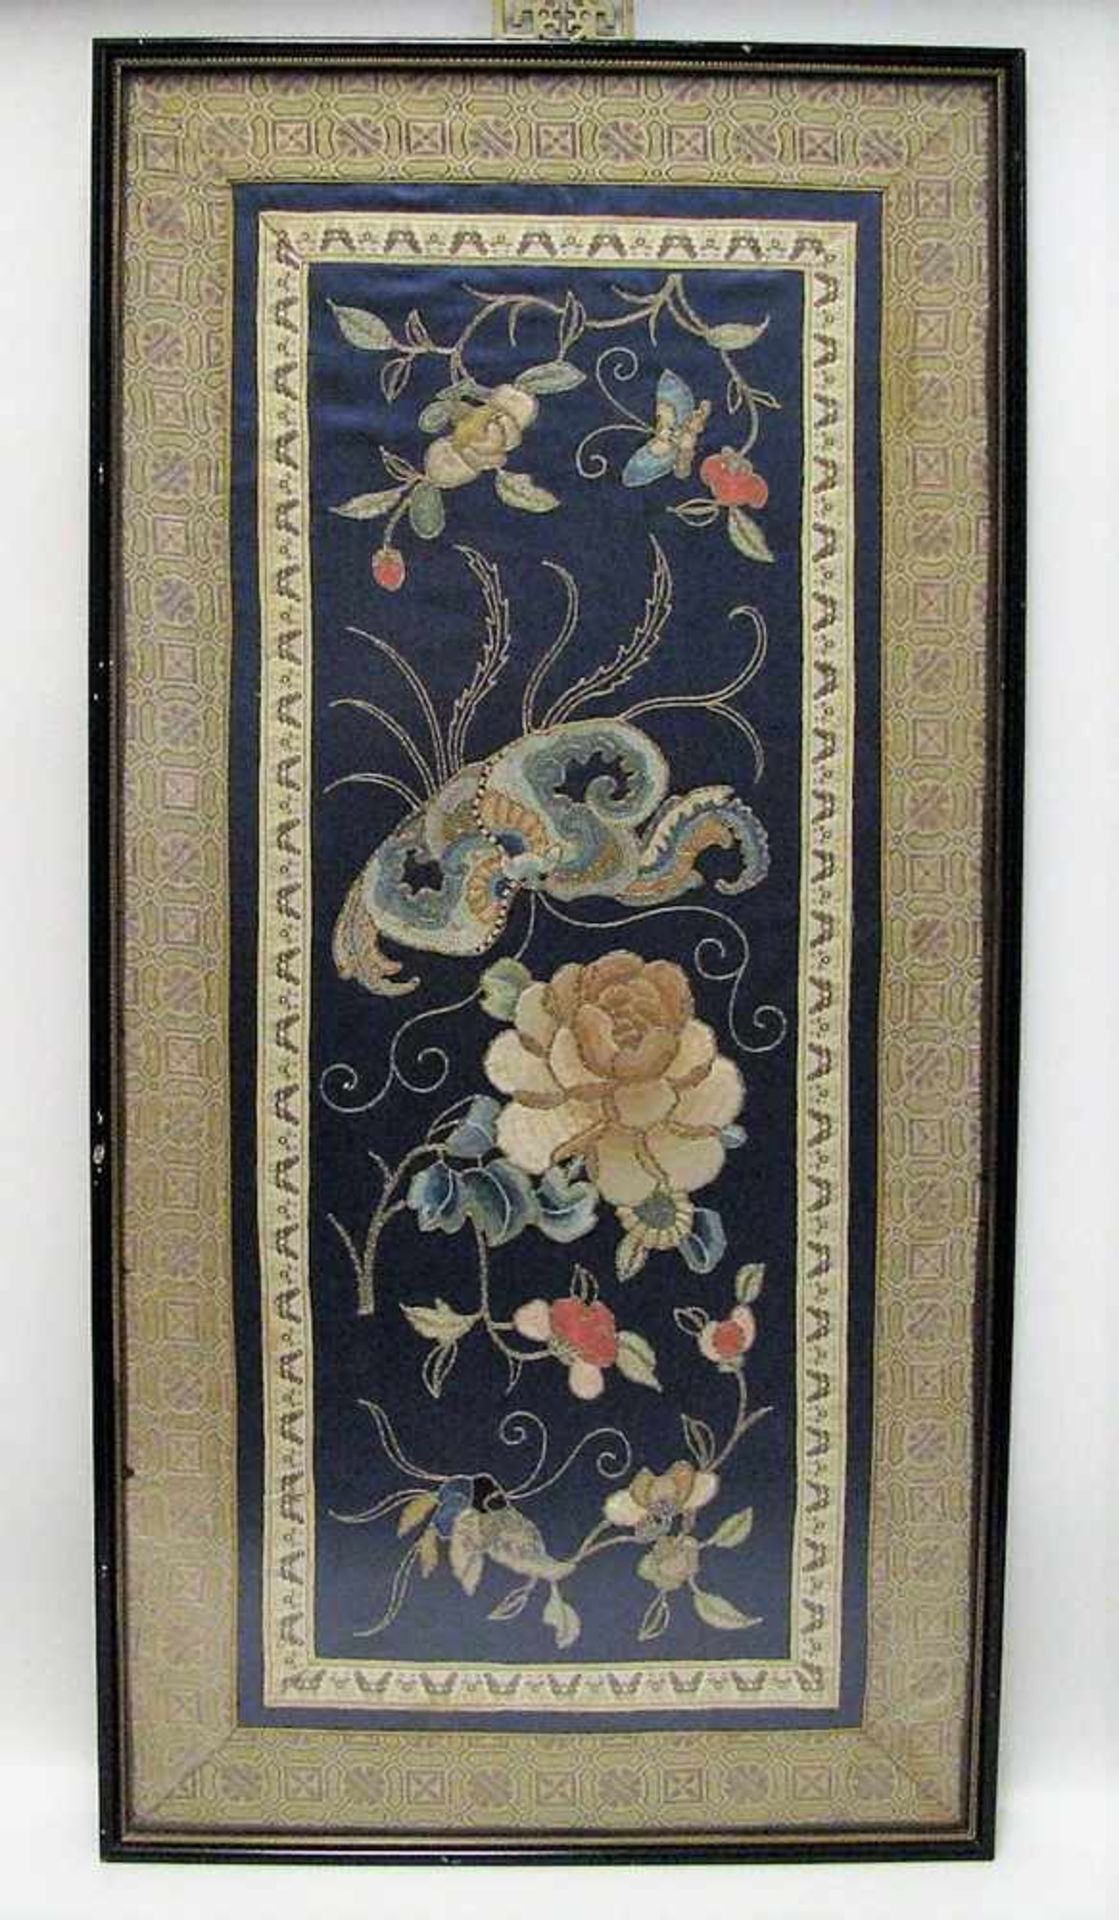 Seidenstickerei, China, 19. Jahrhundert, 54 x 22 cm, R.- - -19.00 % buyer's premium on the hammer